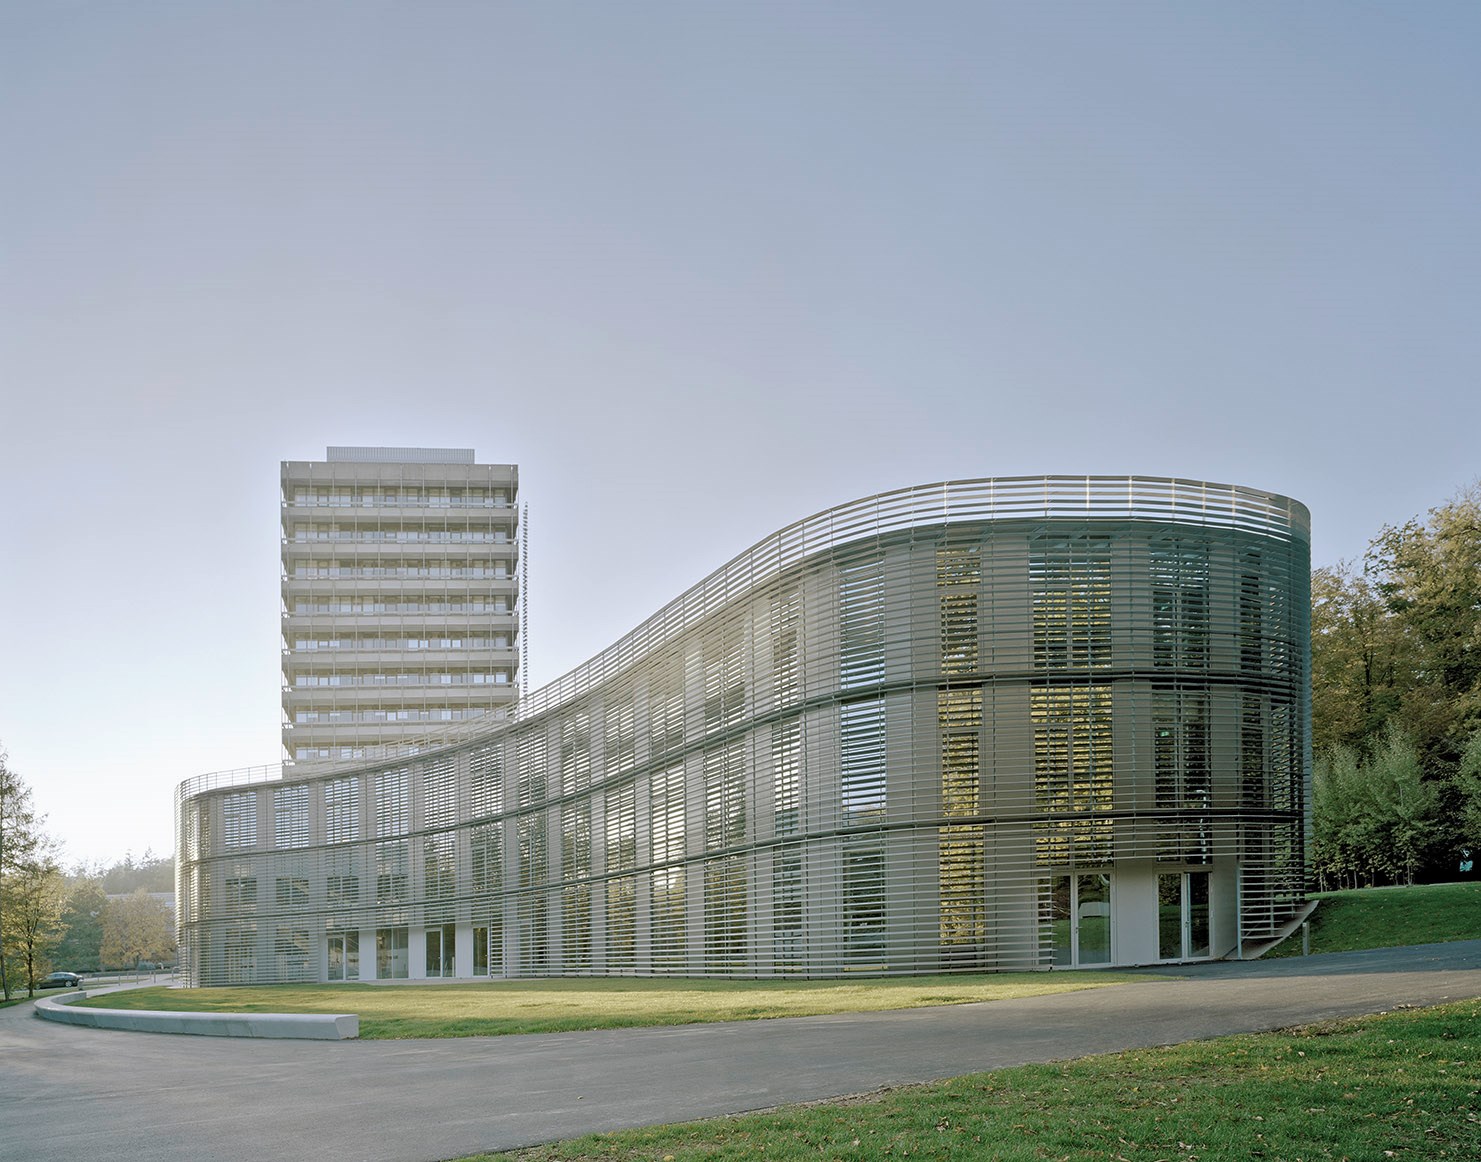 Raumfahrt-Zentrum Baden-Württemberg (RZBW)